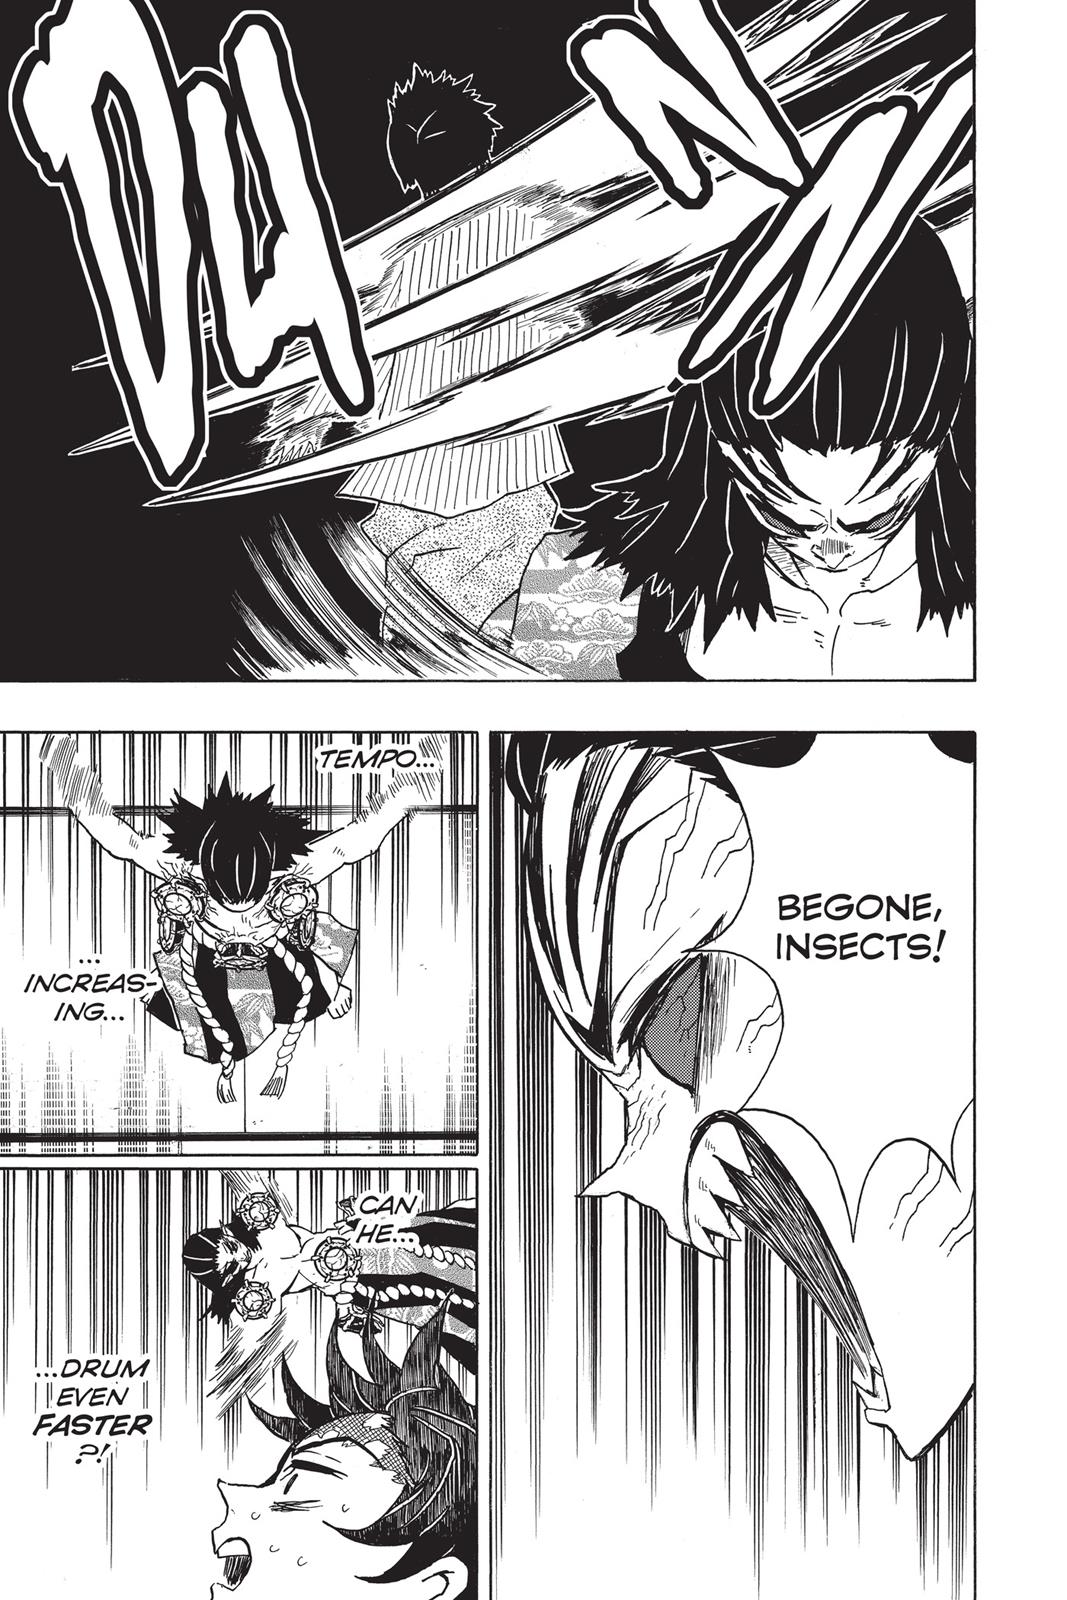 Demon Slayer Manga Manga Chapter - 25 - image 2